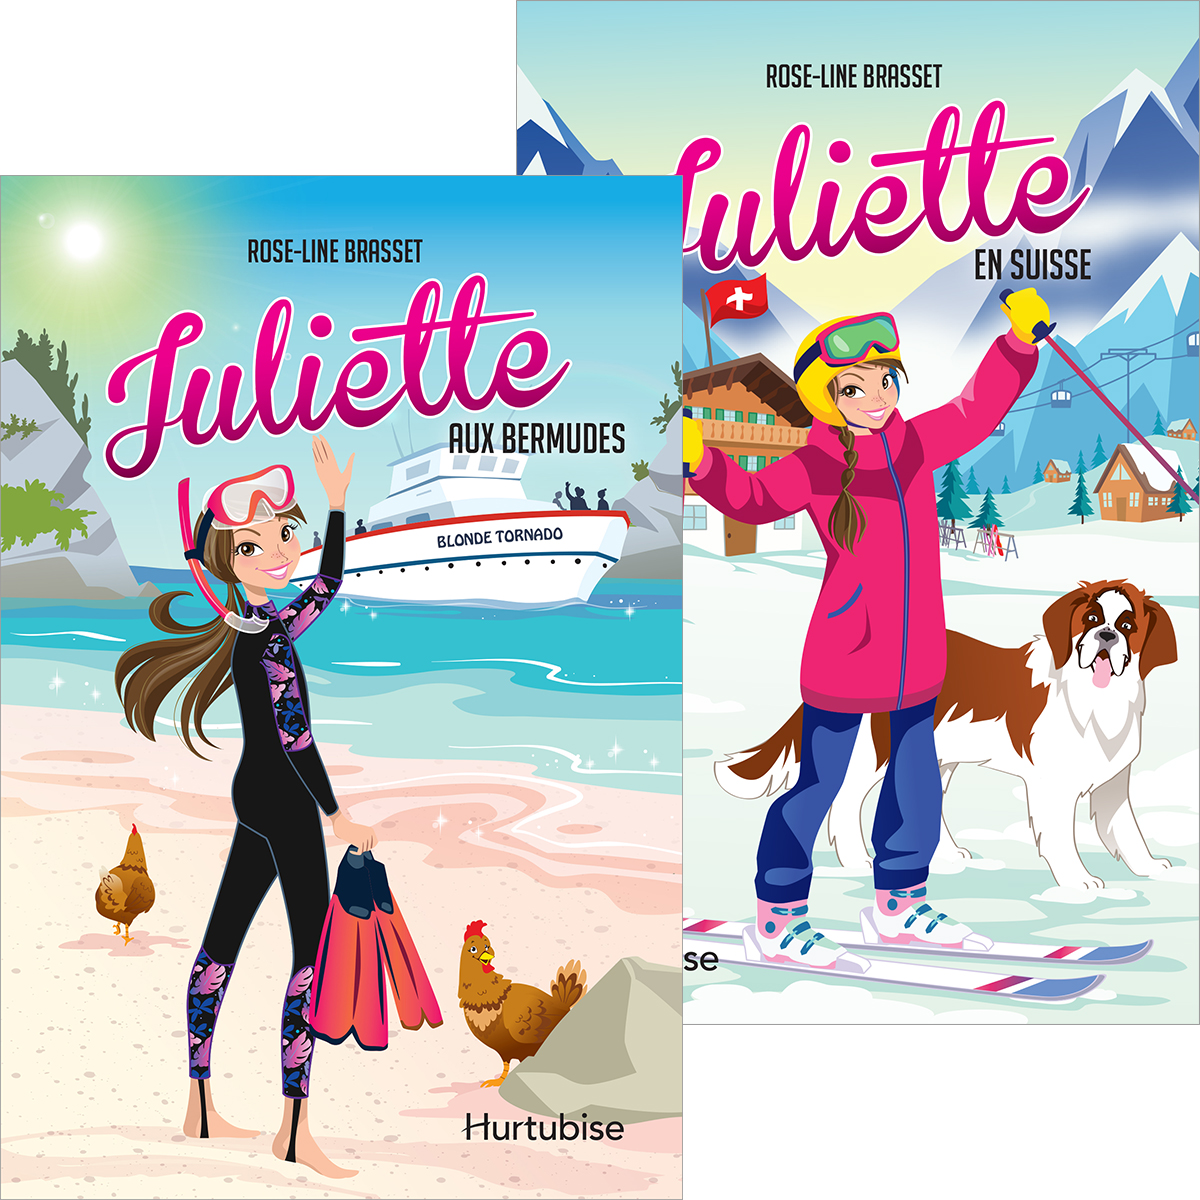  Duo Juliette 